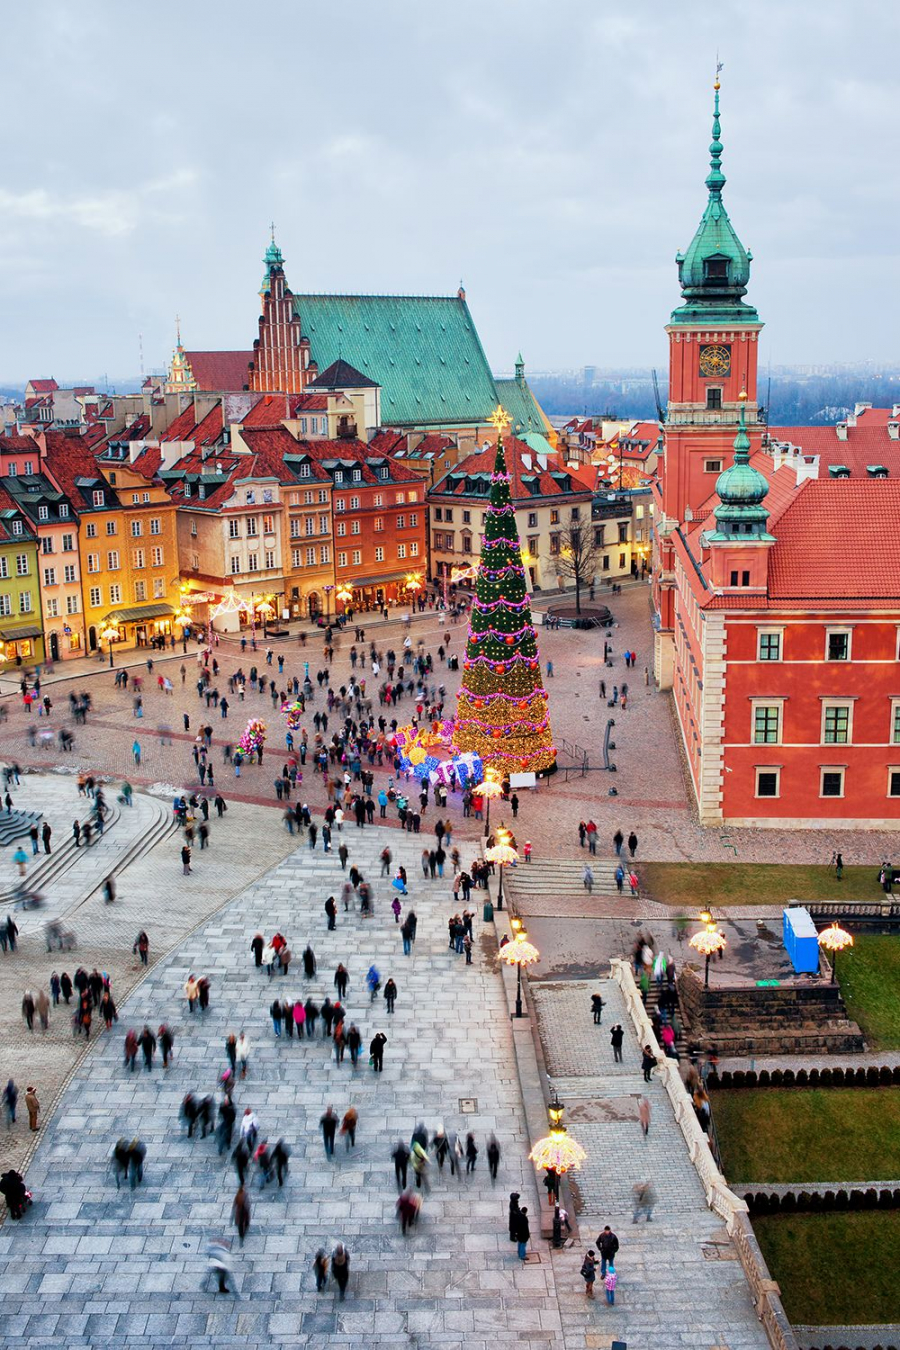 Warsaw, Ba Lan